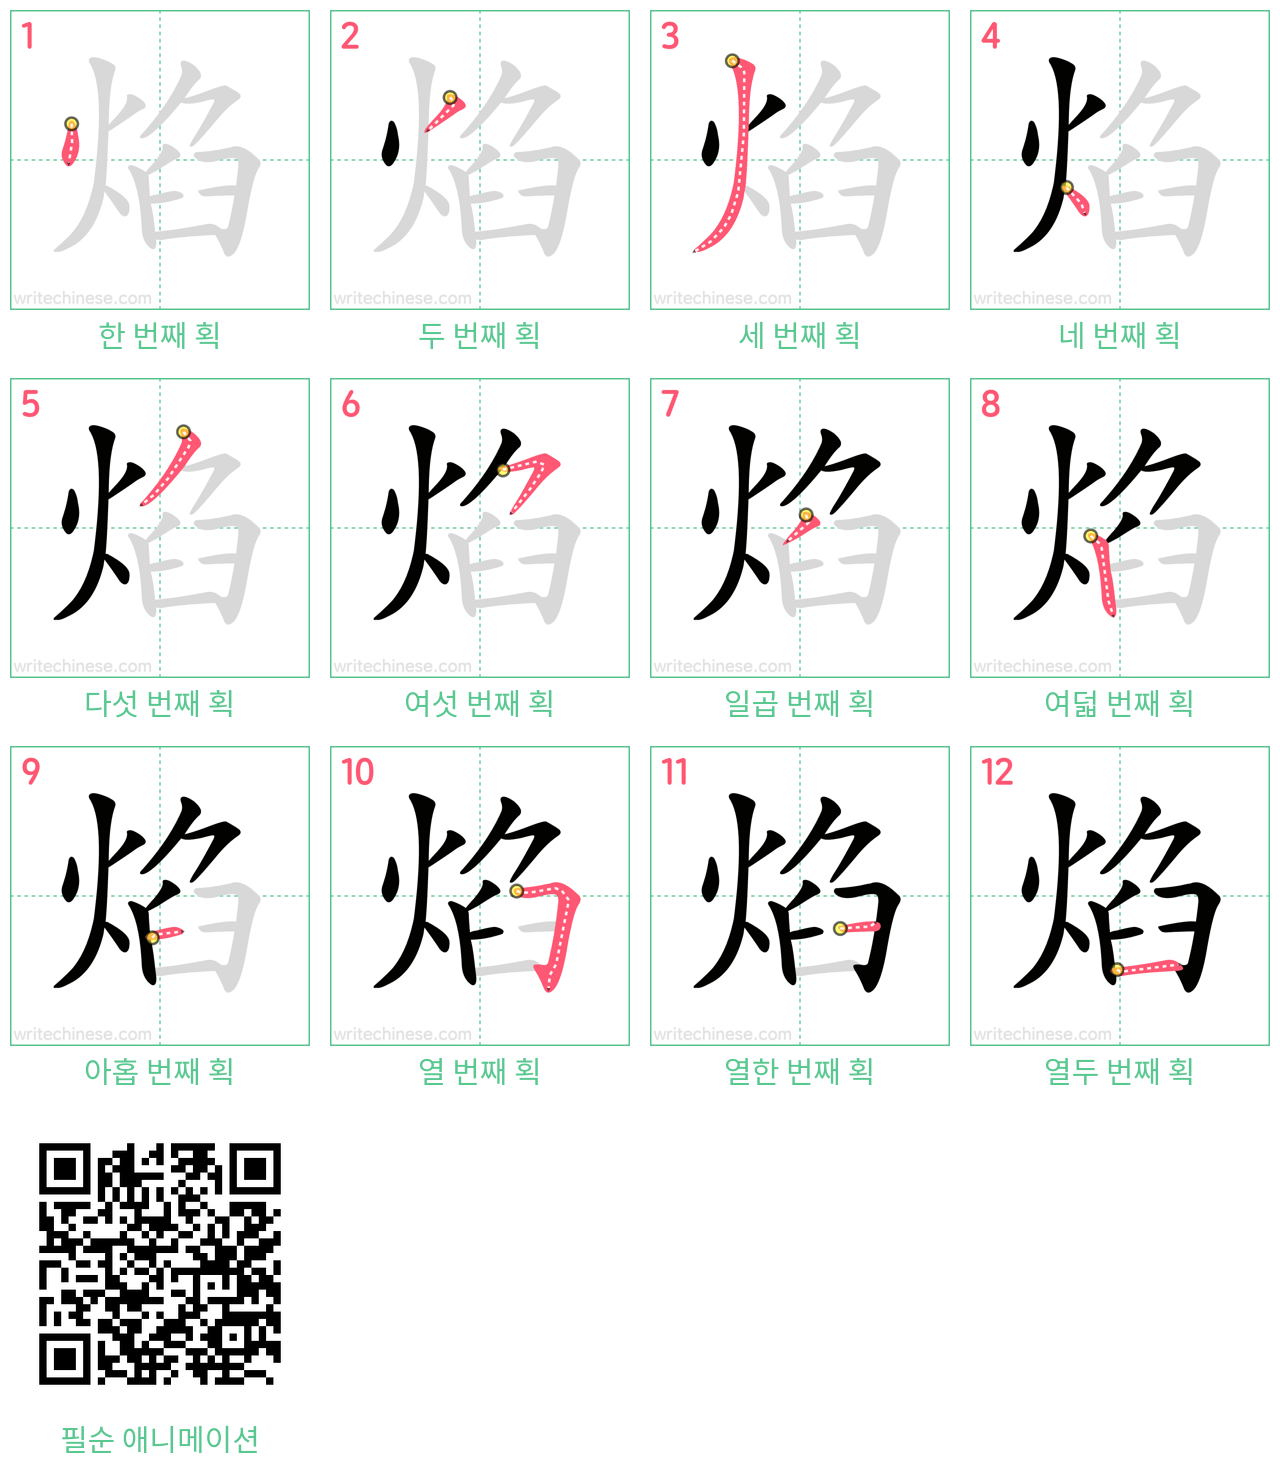 焰 step-by-step stroke order diagrams